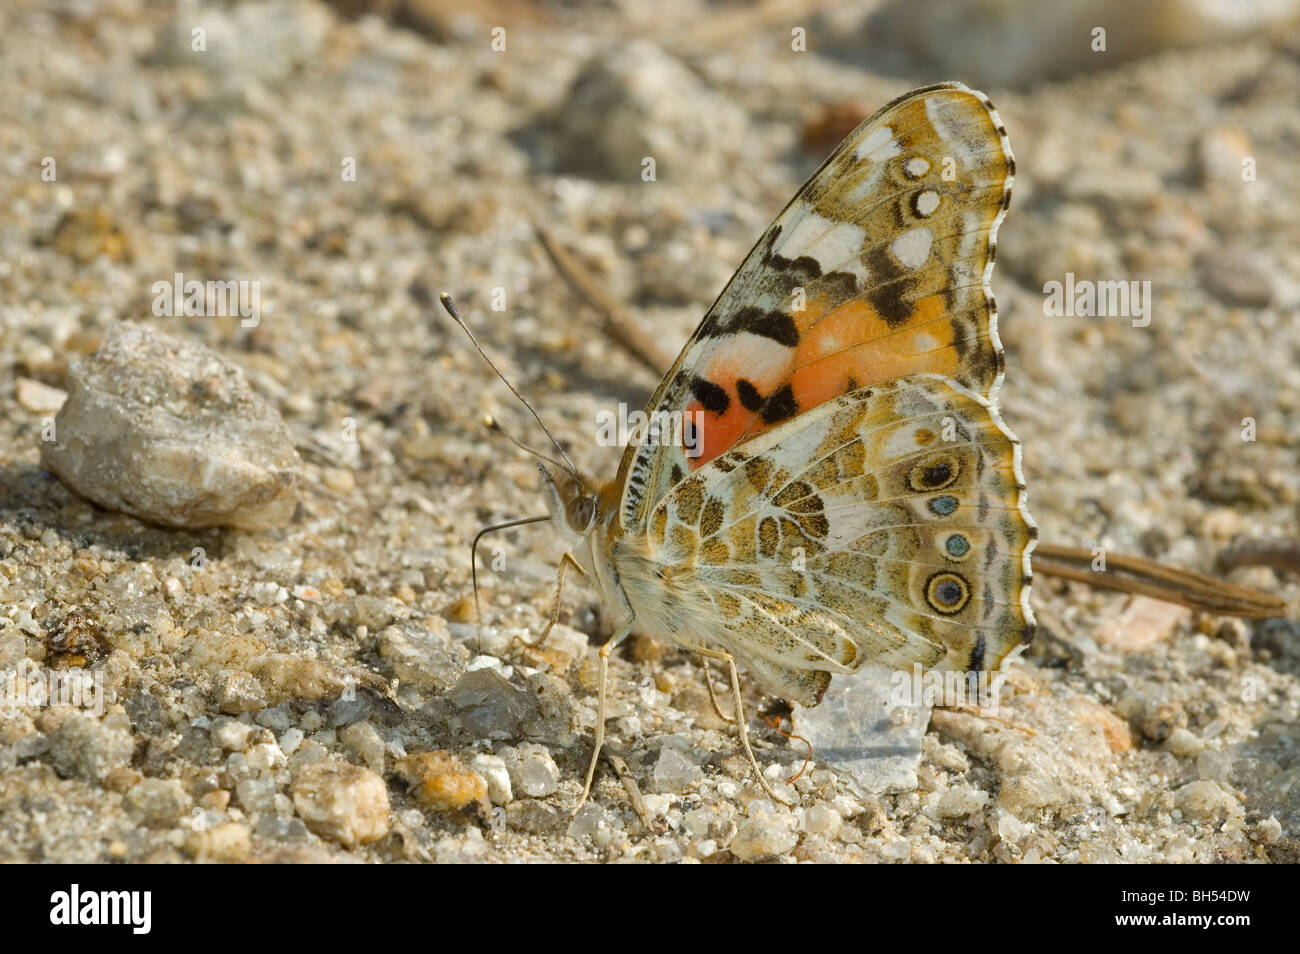 Dipinto di Lady butterfly (Vanessa cardui) alimentazione sul terreno dei minerali Foto Stock